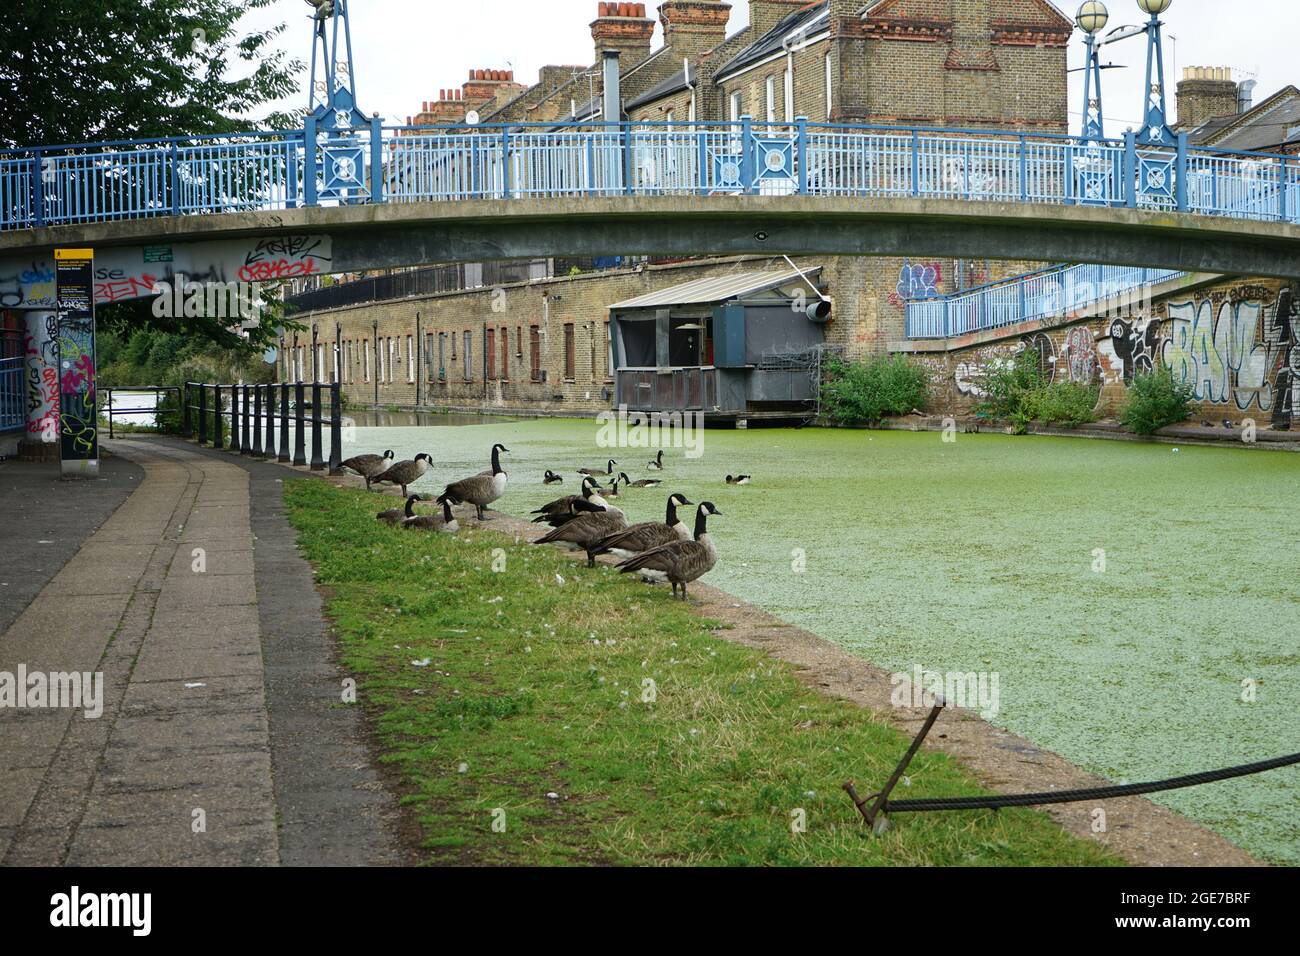 Canards le long du canal, montrant le vert de la chute des feuilles d'automne, à Little Venice, de Warwick Ave à Ladbroke Grove, à Londres Angleterre, U.K Banque D'Images